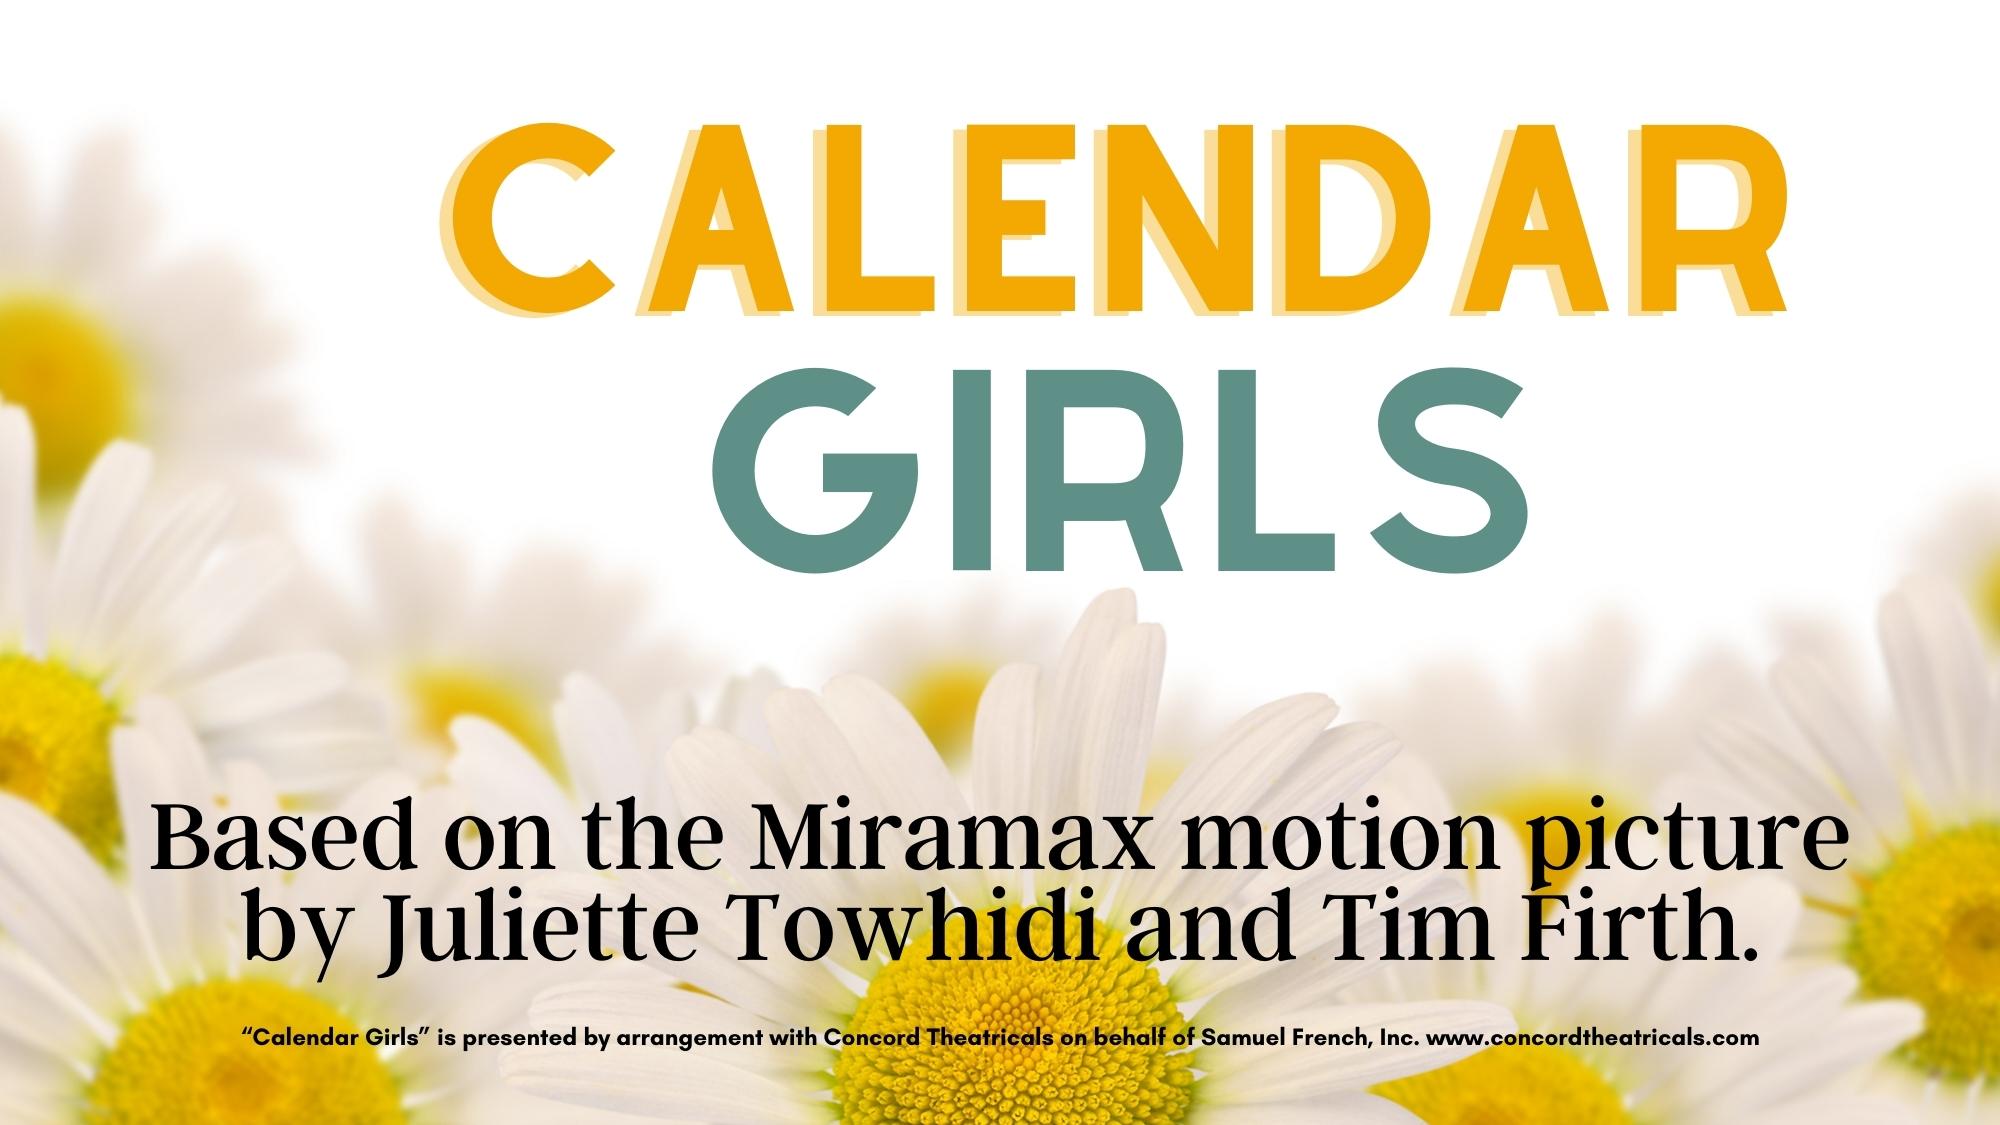 Calendar Girl Audiobooks